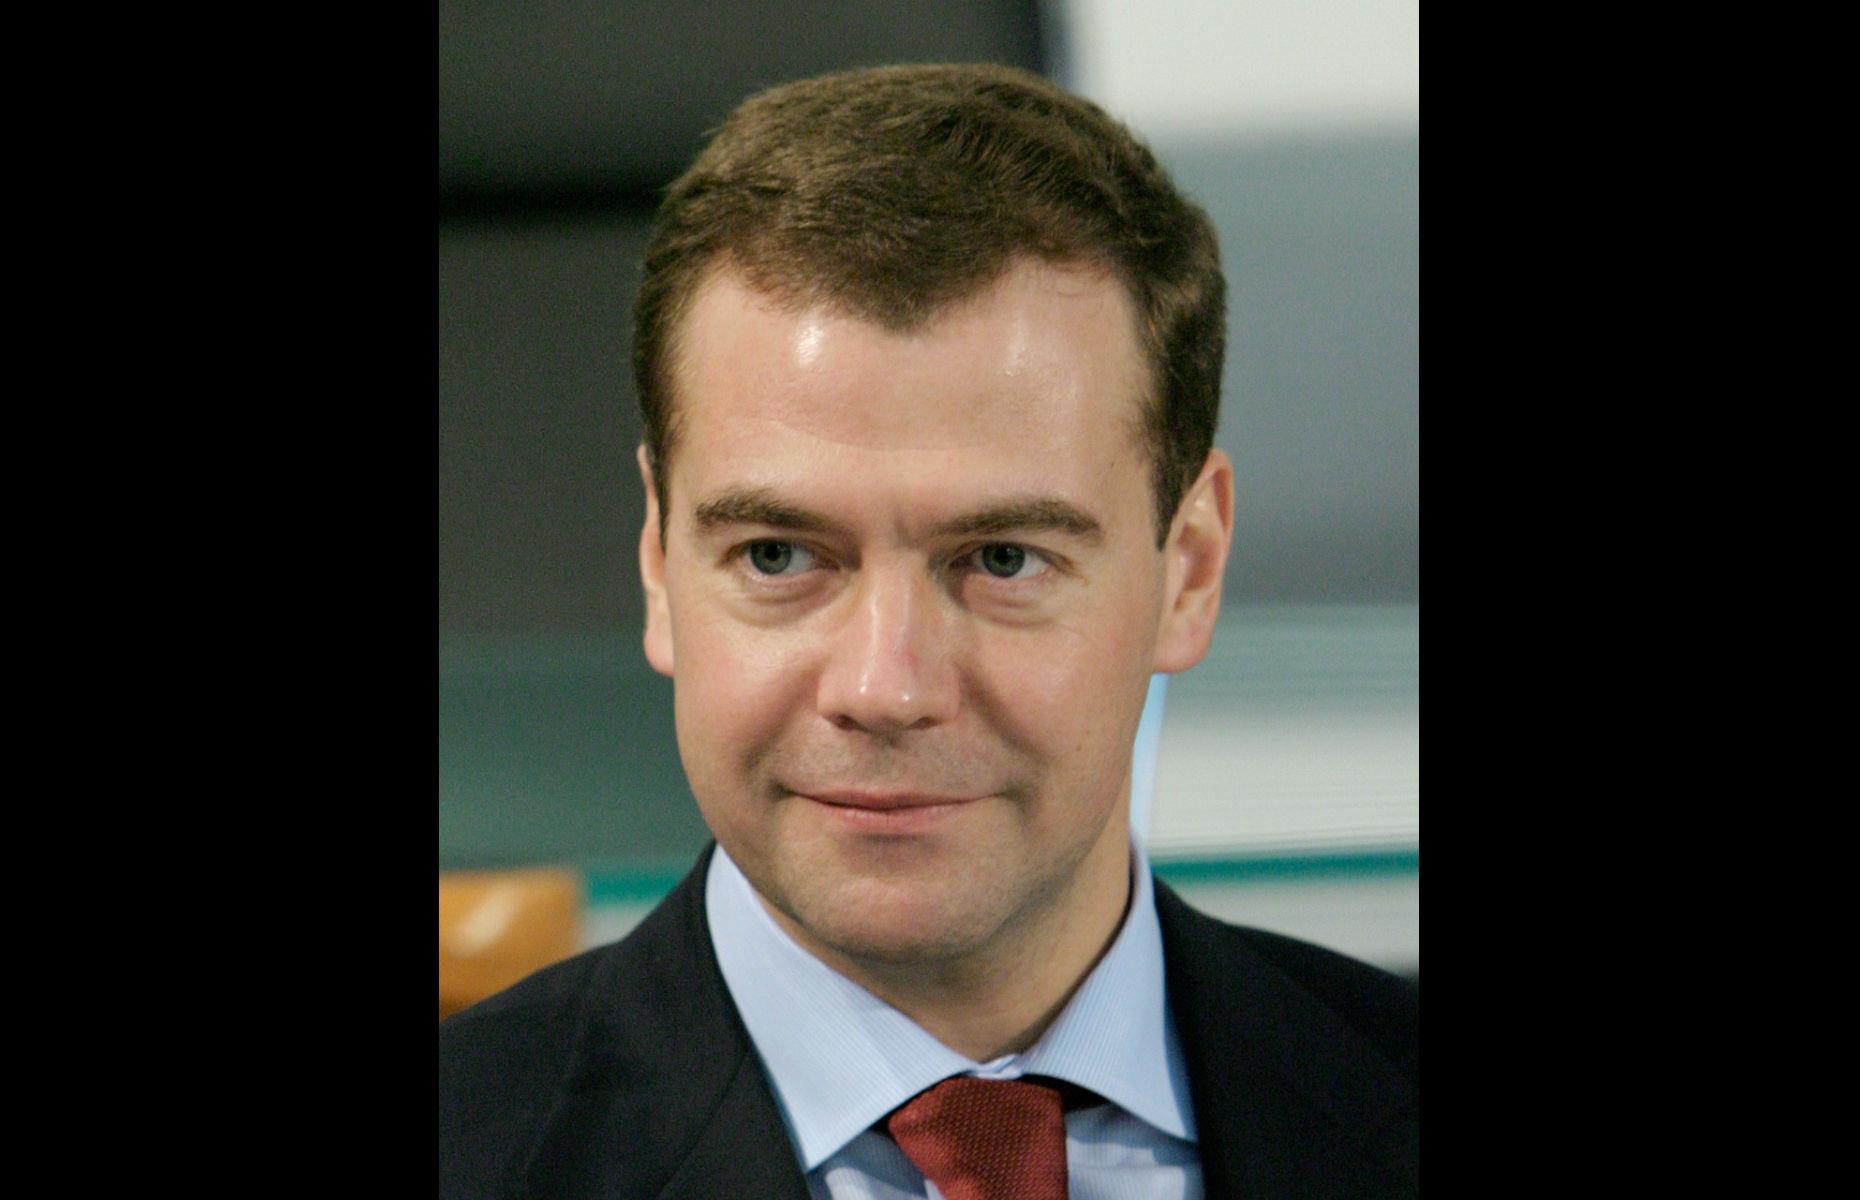 Dmitry Medvedev, former Russian prime minister: Street cleaner 